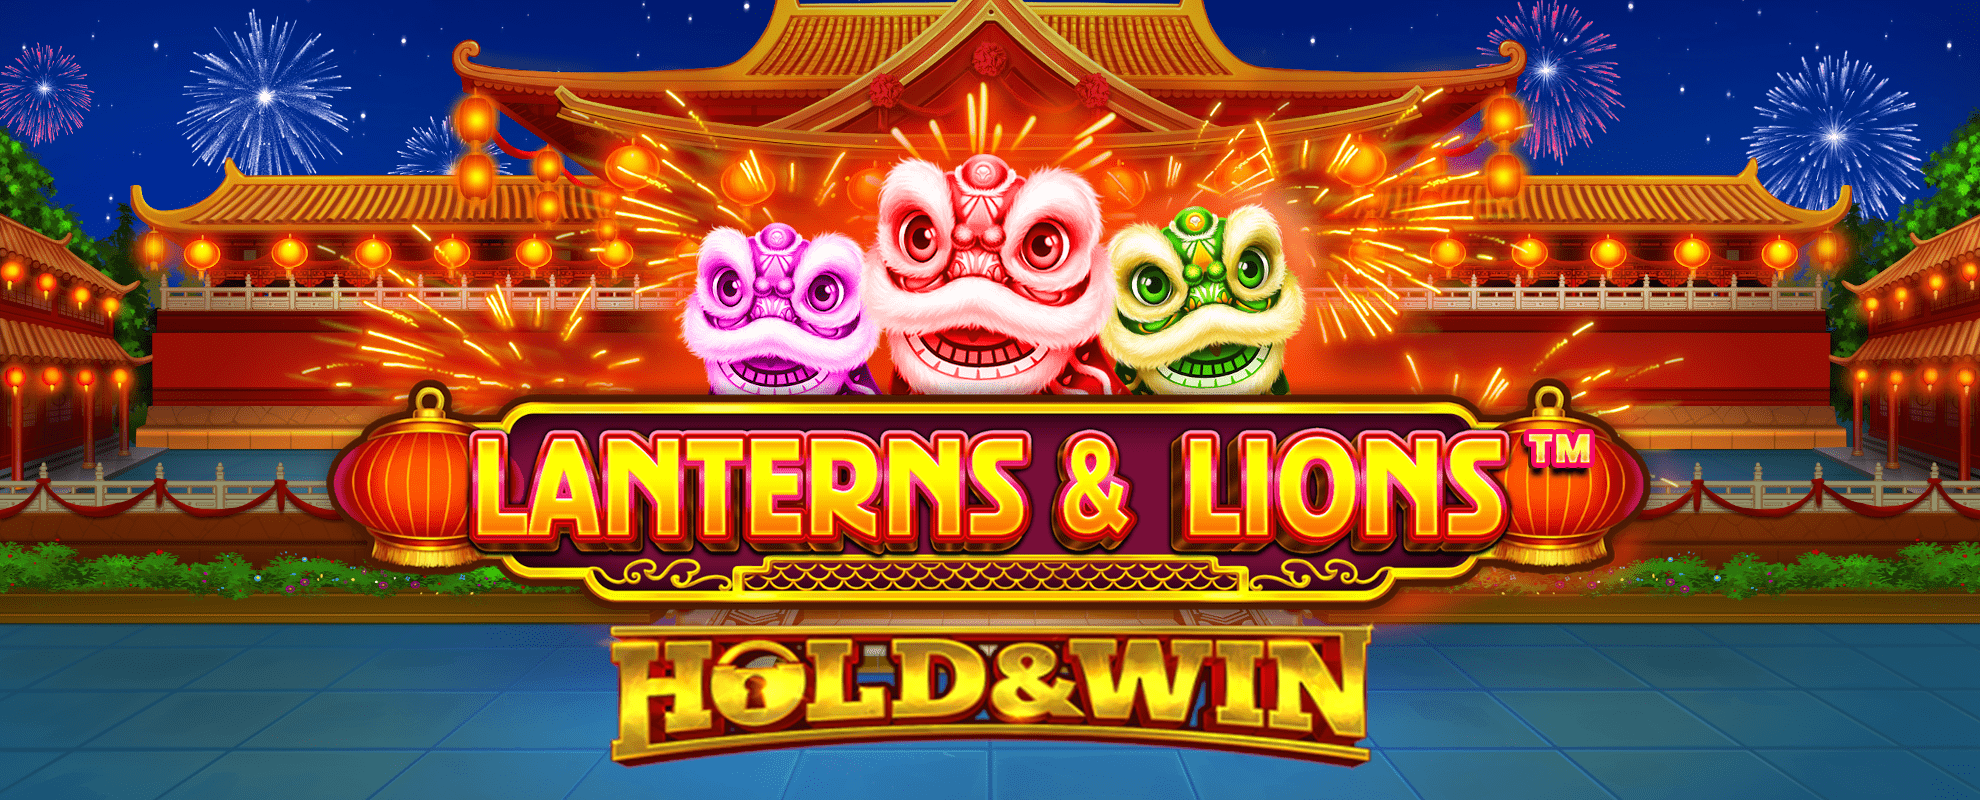 Lanterns & Lions slot cover image